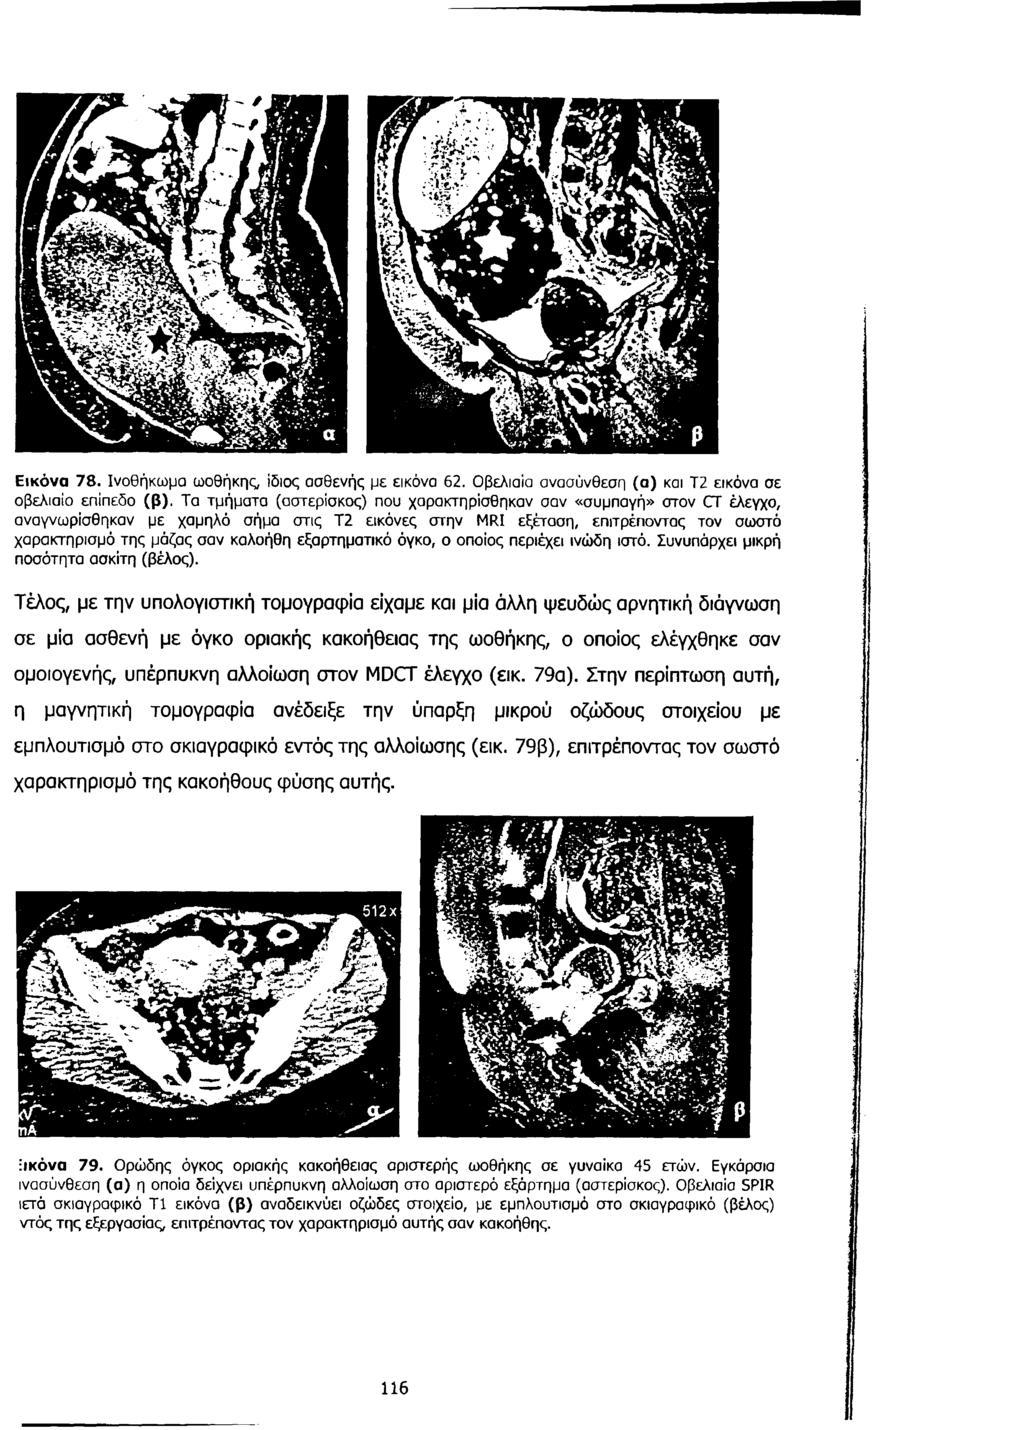 Εικόνα 78. Ινοθήκωμα ωοθήκης, ίδιος ασθενής με εικόνα 62. Οβελιαία ανασύνθεση (α) και Τ2 εικόνα σε οβελιαίο επίπεδο (β).